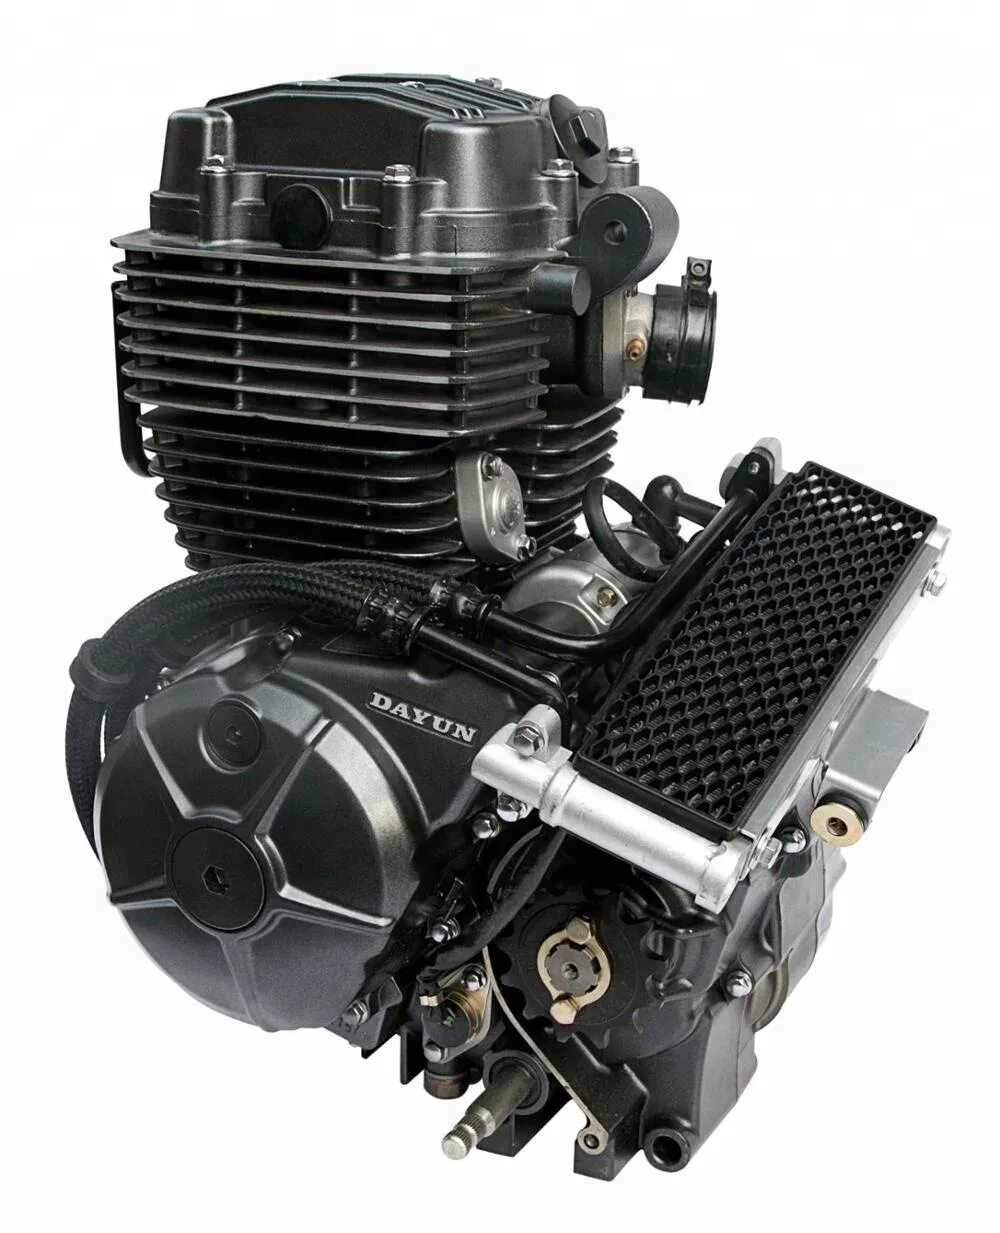 Двигатель Zongshen 200cc. Зонгшен 200 кубов мотор. Зонгшен 150 кубов мотор. Двигатель 165fml 200 cc.